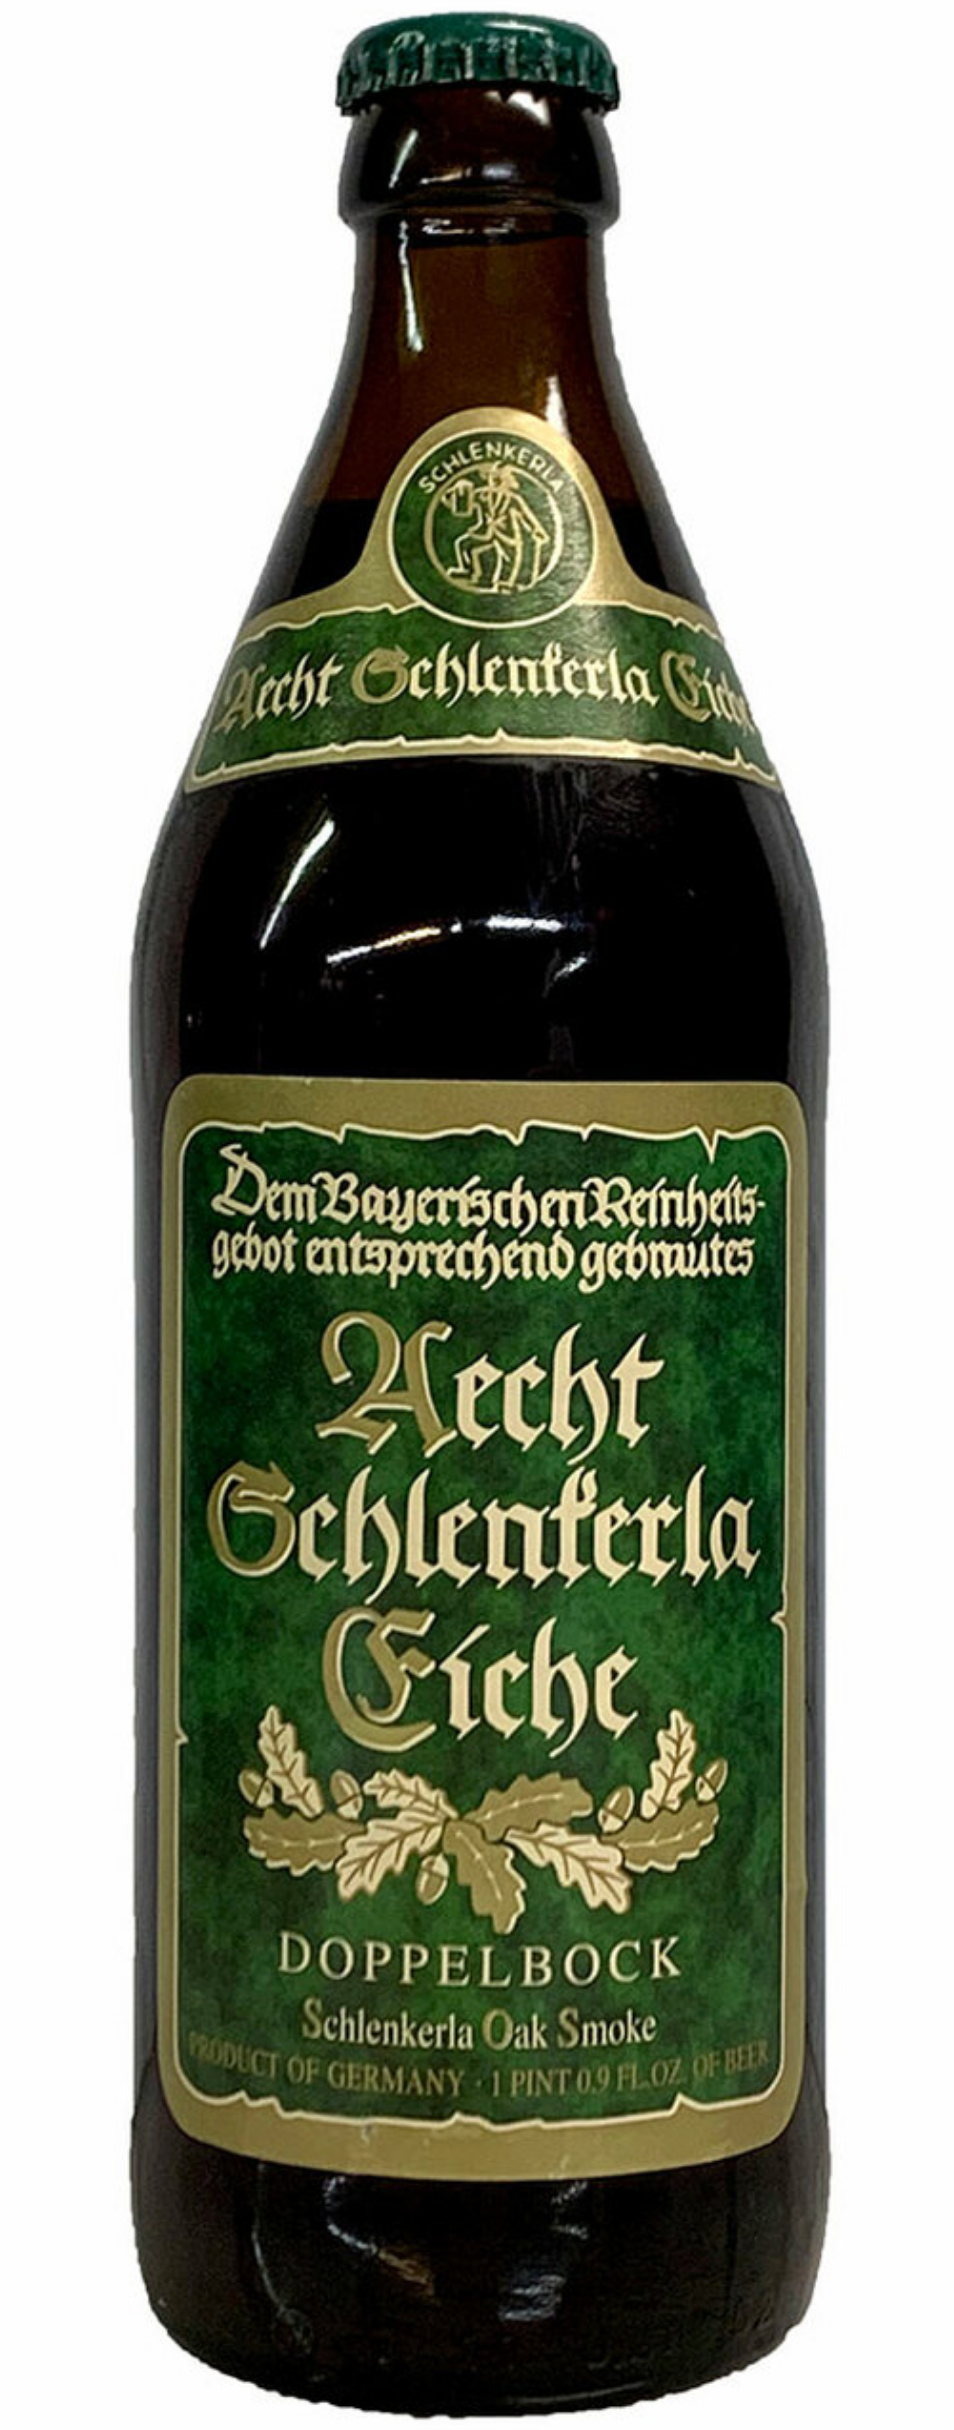 Aecht Schlenkerla Eiche - Double Bock - Oak Smoke 8.0% ABV 568ml Bottle